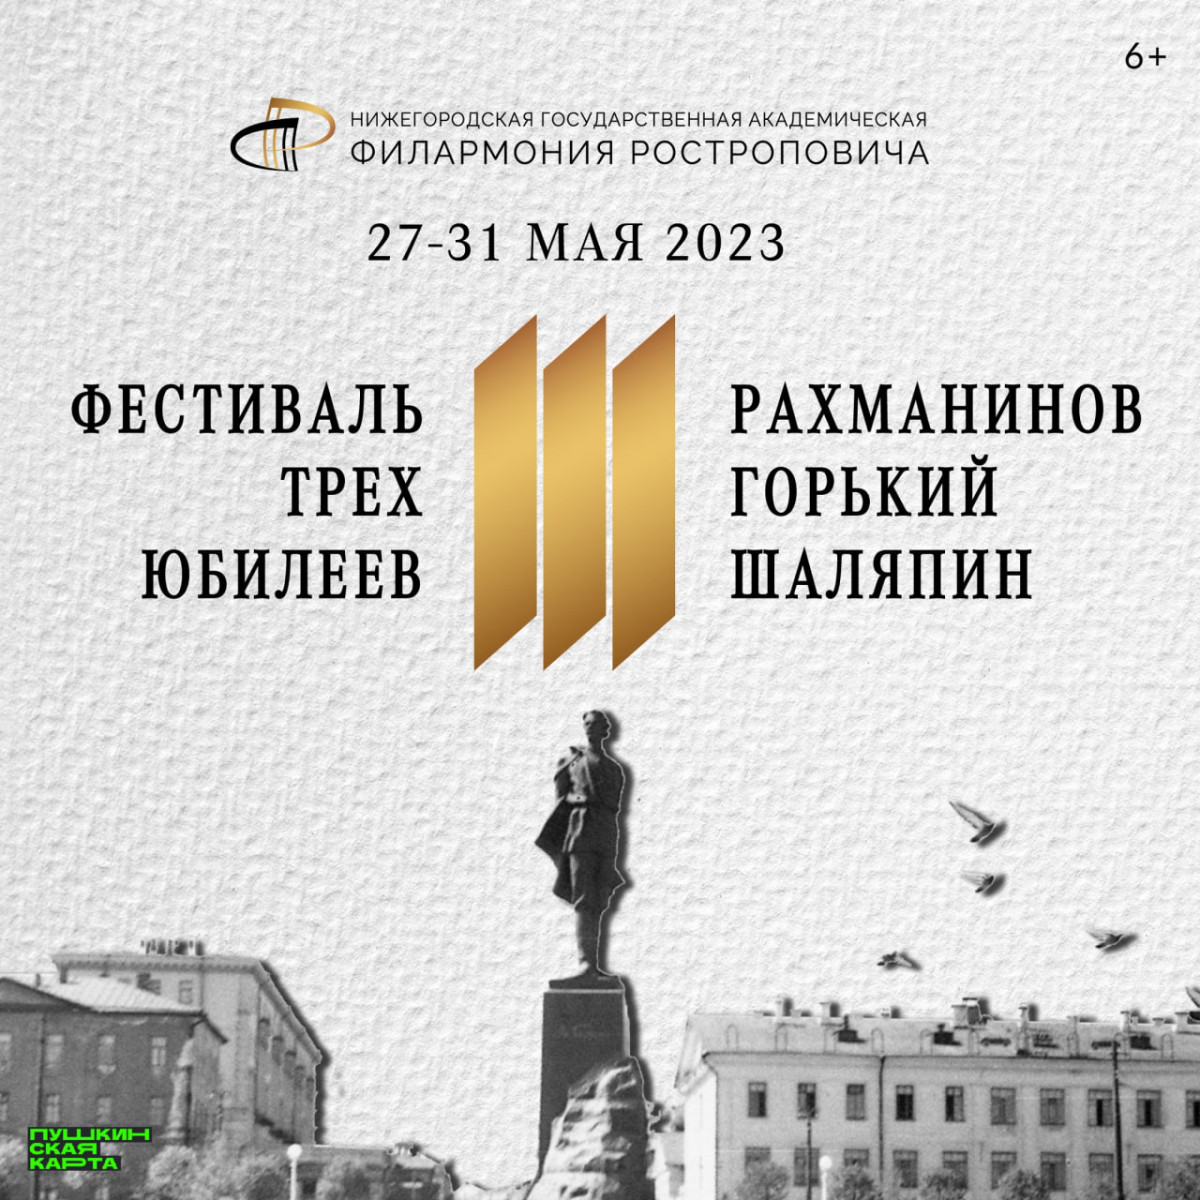 В Нижнем Новгороде состоится фестиваль, посвященный юбилеям Рахманинова, Шаляпина и Горького